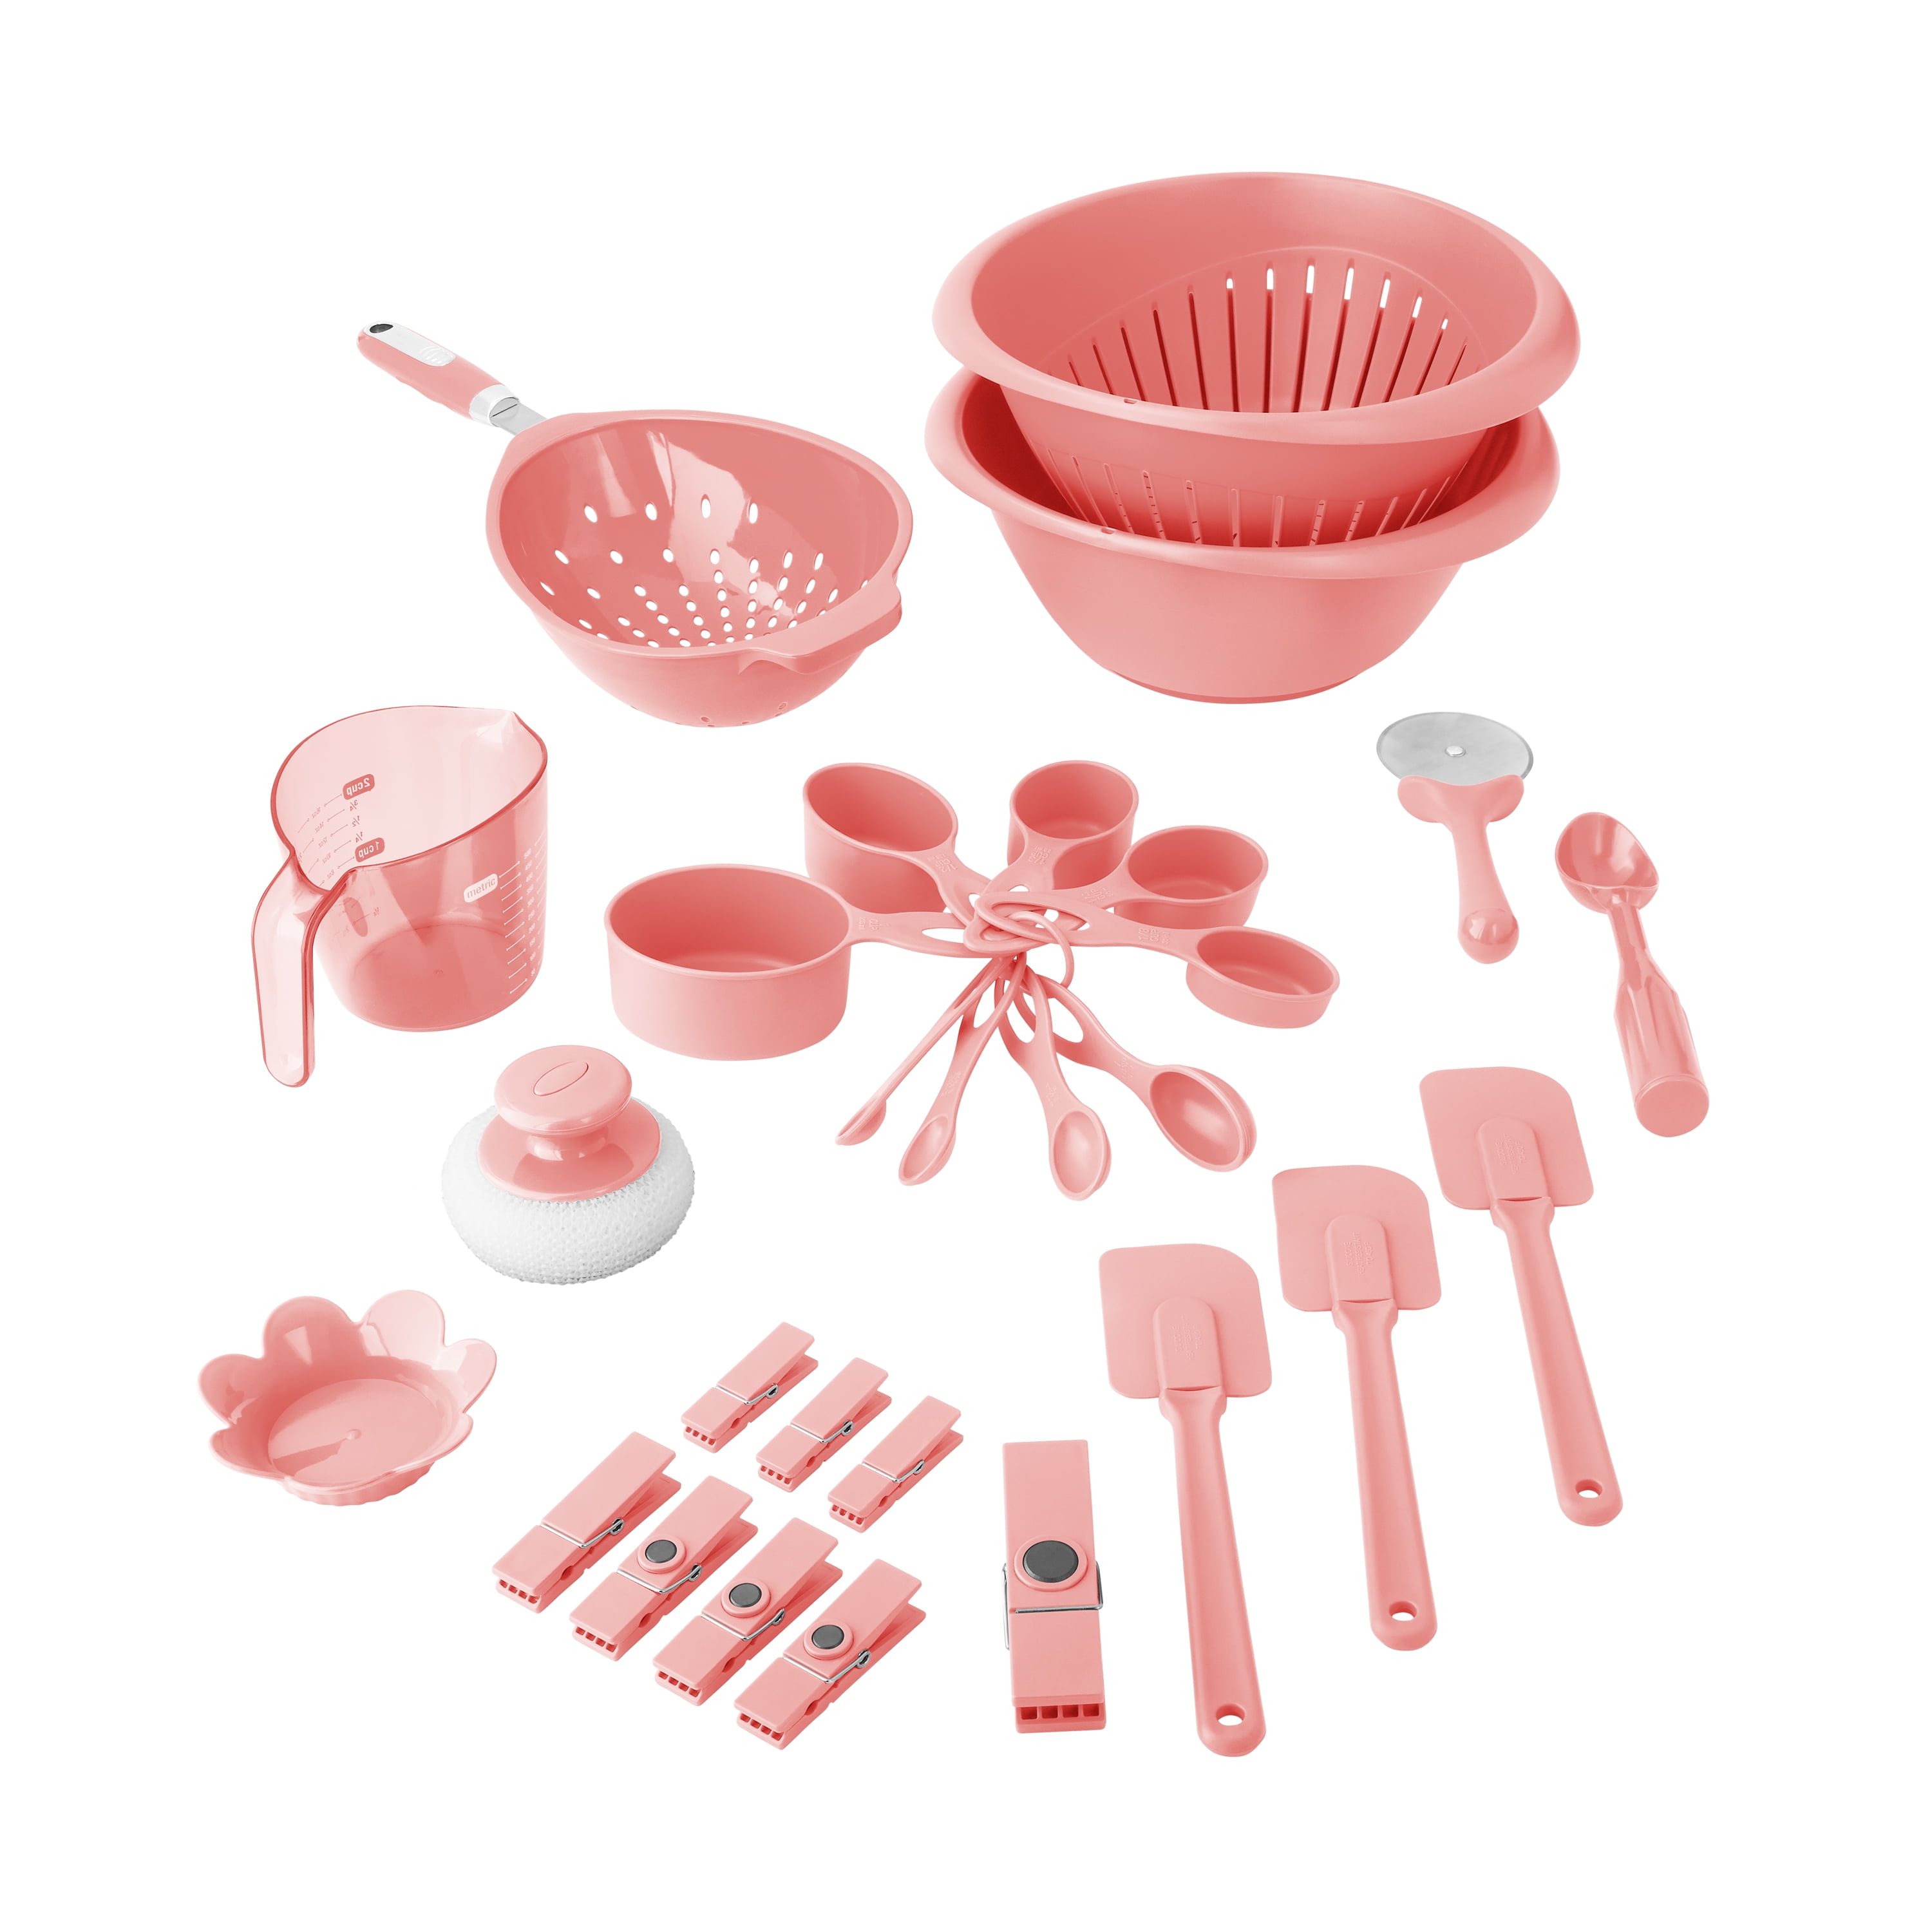 Red Plastic Bakelite Handle Kitchen Utensils,set of 3,gadgets